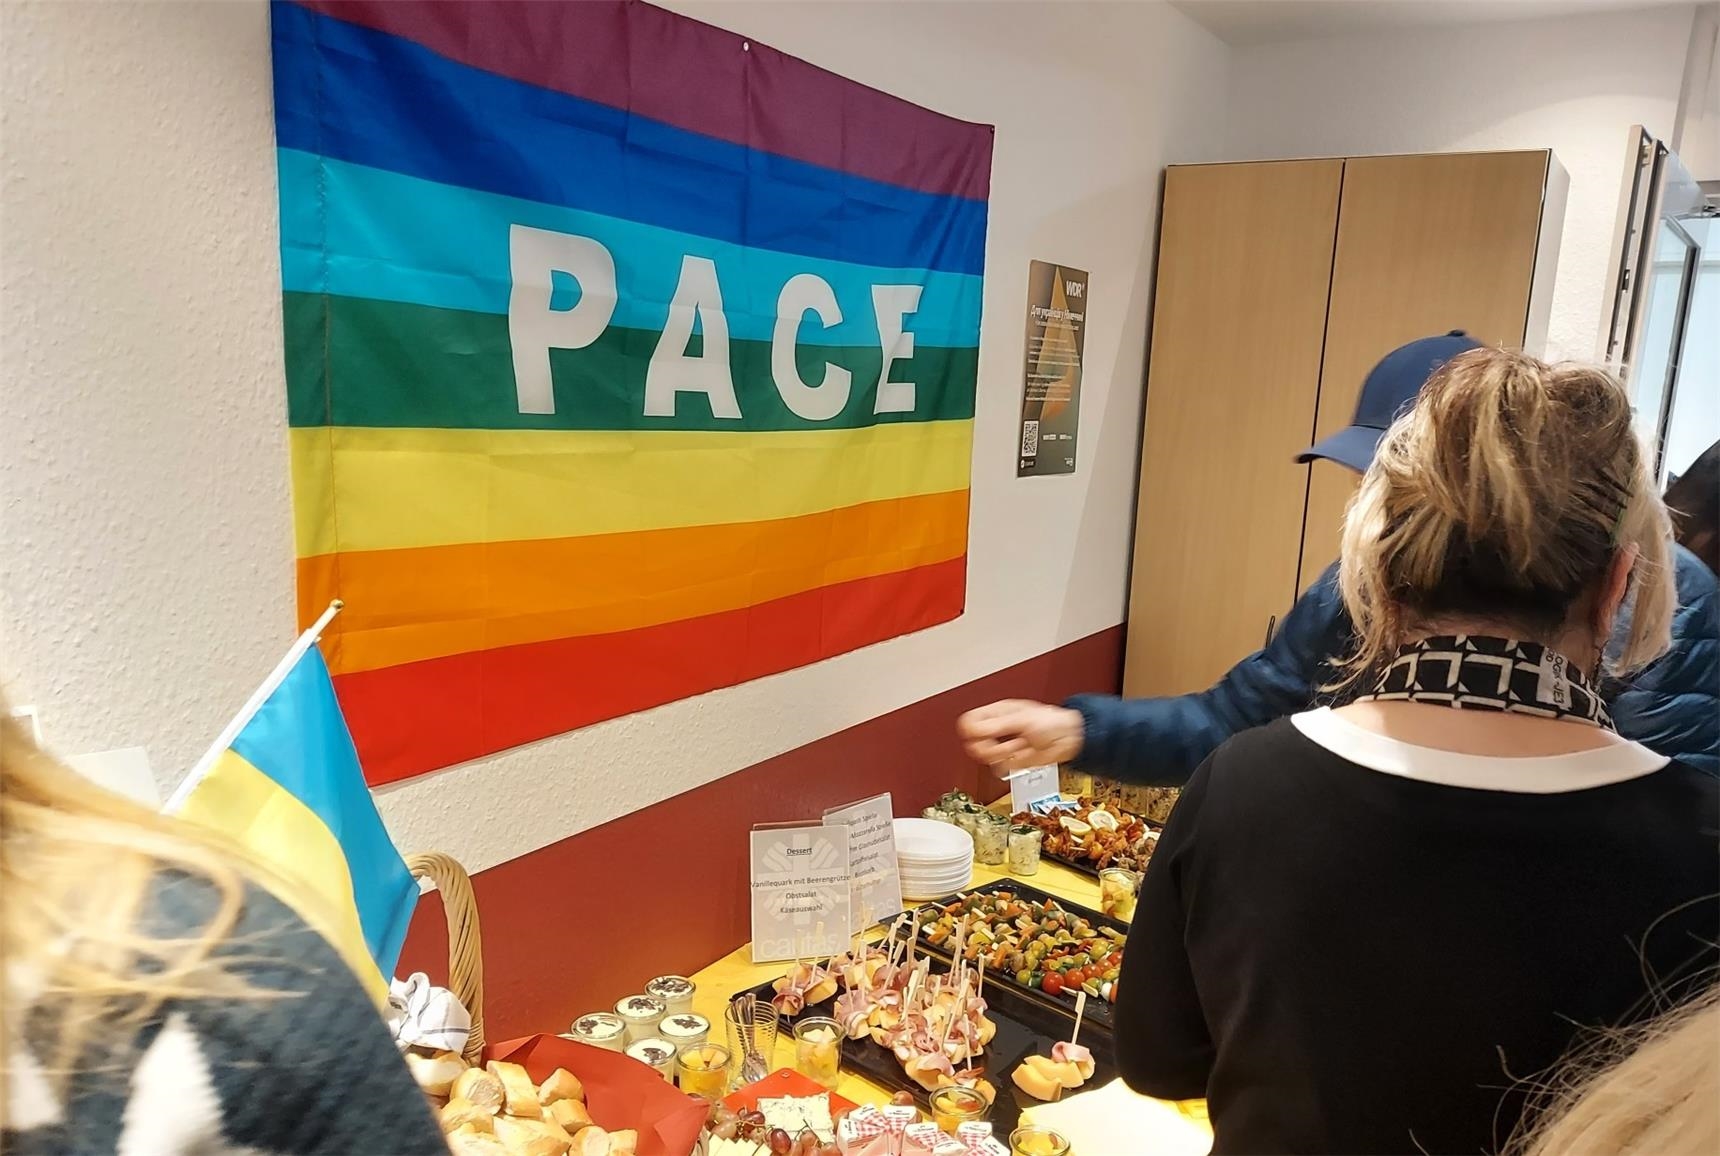 Regenbogenflagge mit Schriftzug Frieden "Pace" vor einem Buffet mit Personen 